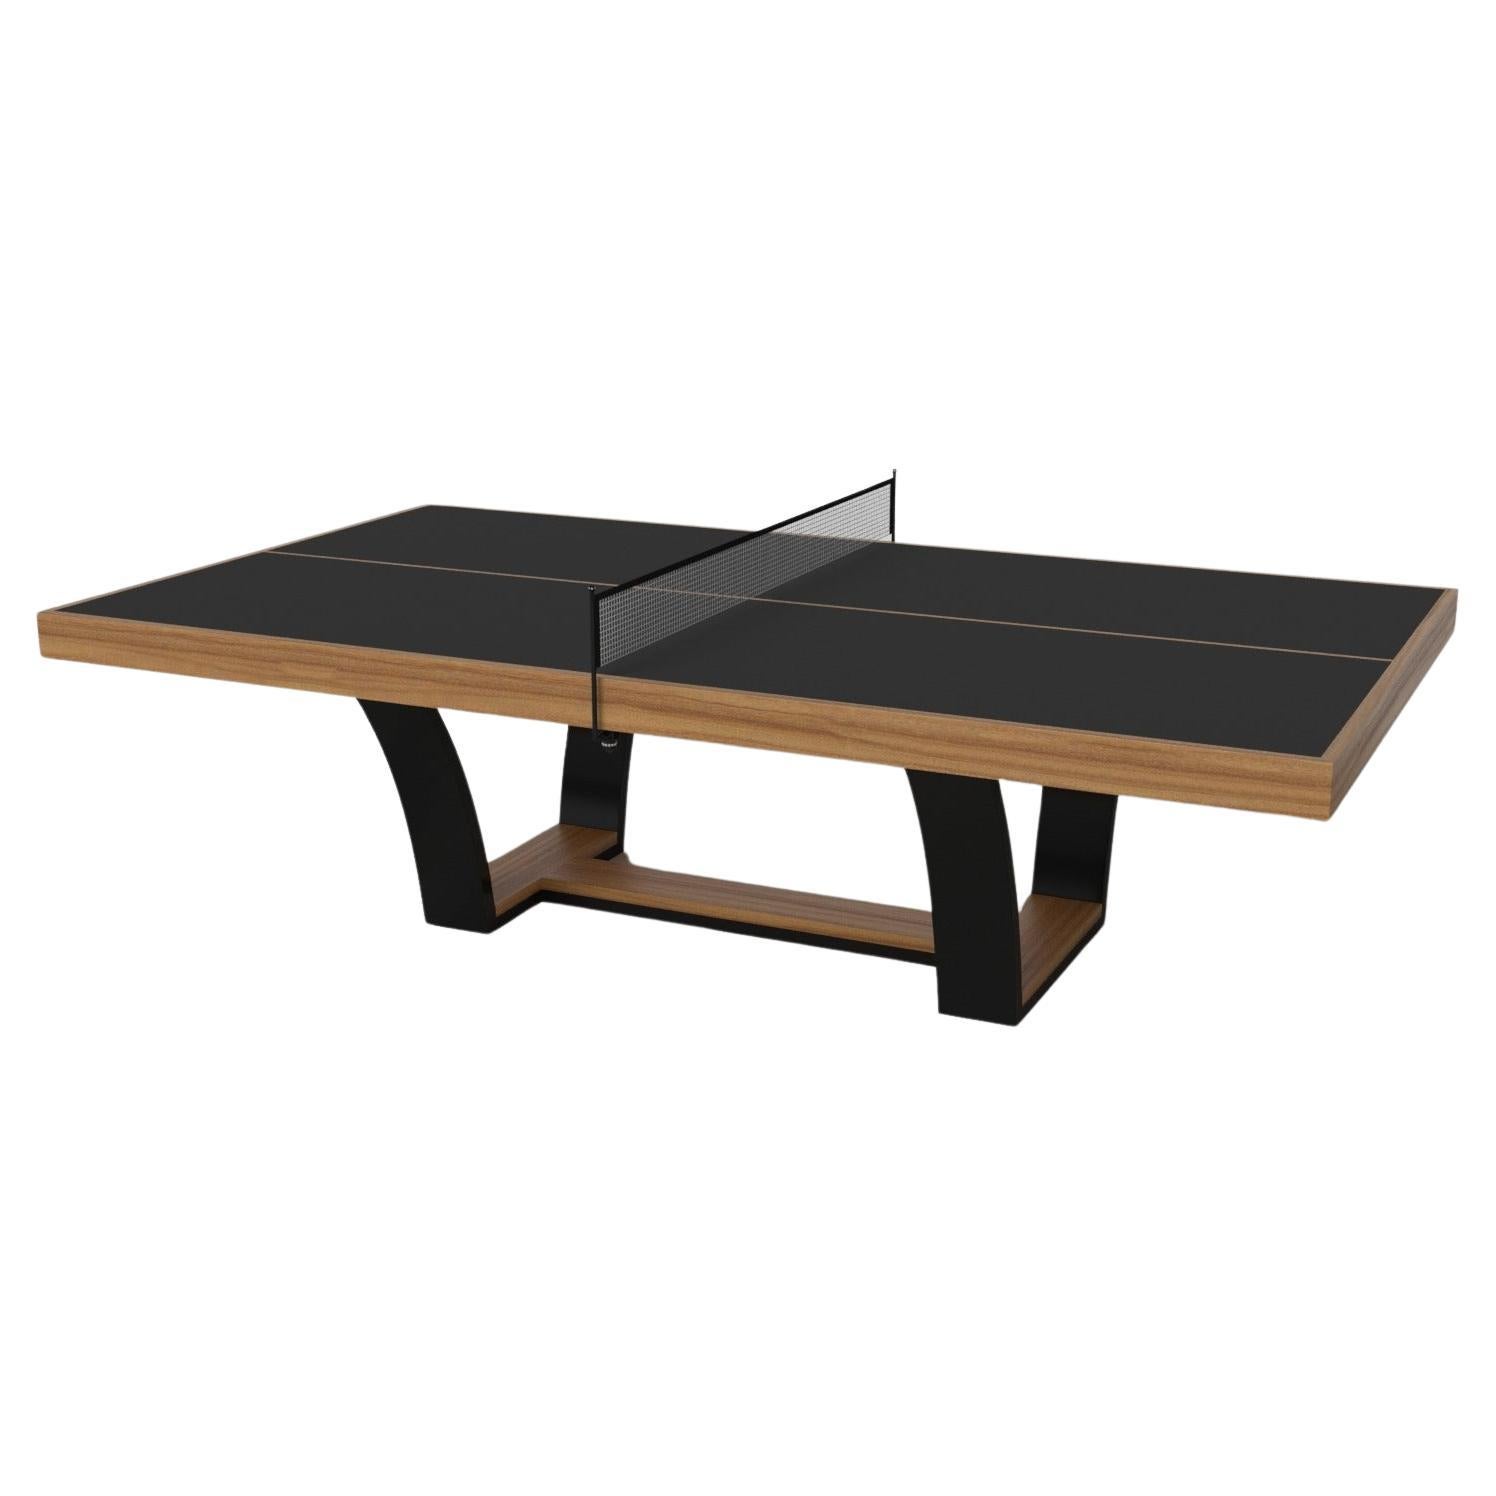 Elevate Customs Elite Tennis Table / Solid Teak Wood in 9' - Made in USA